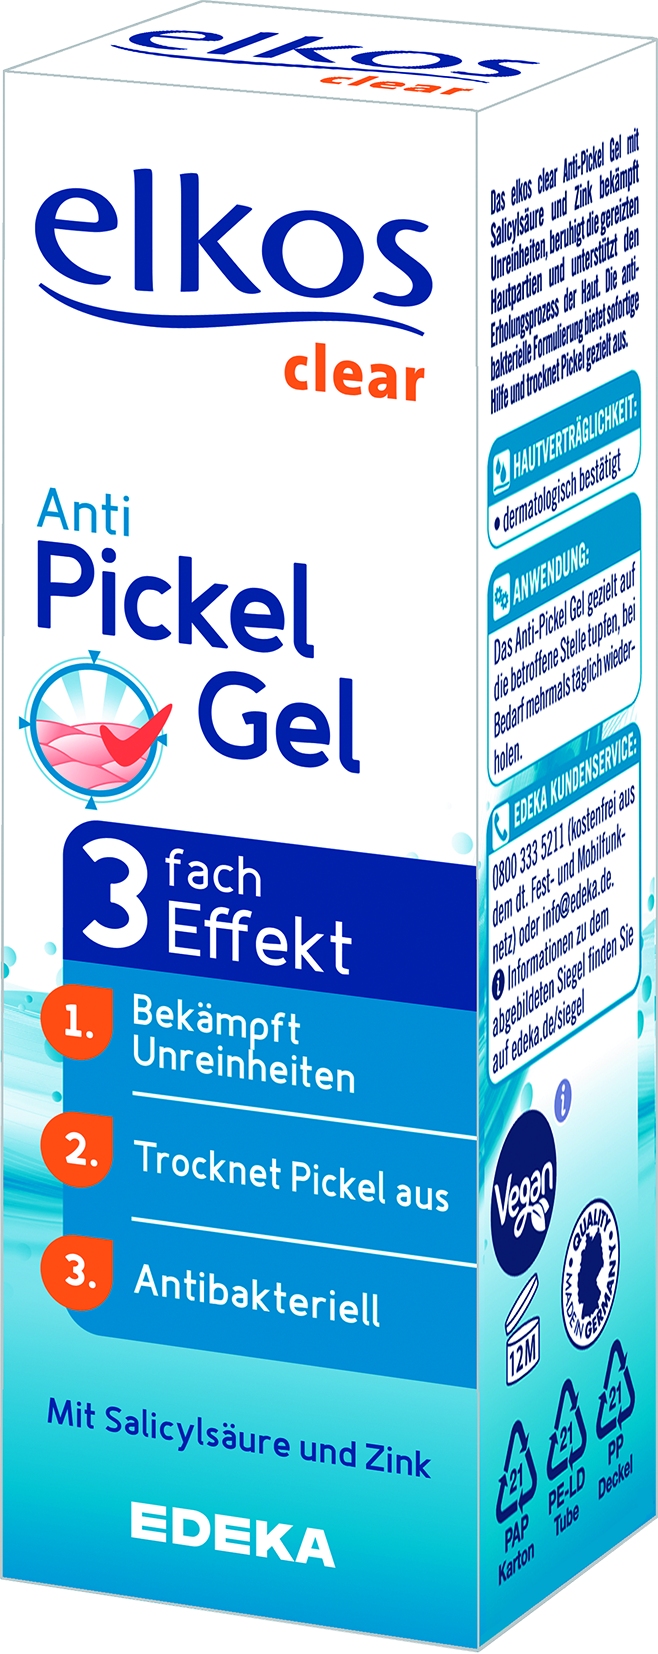  Anti-Pickel Gel   